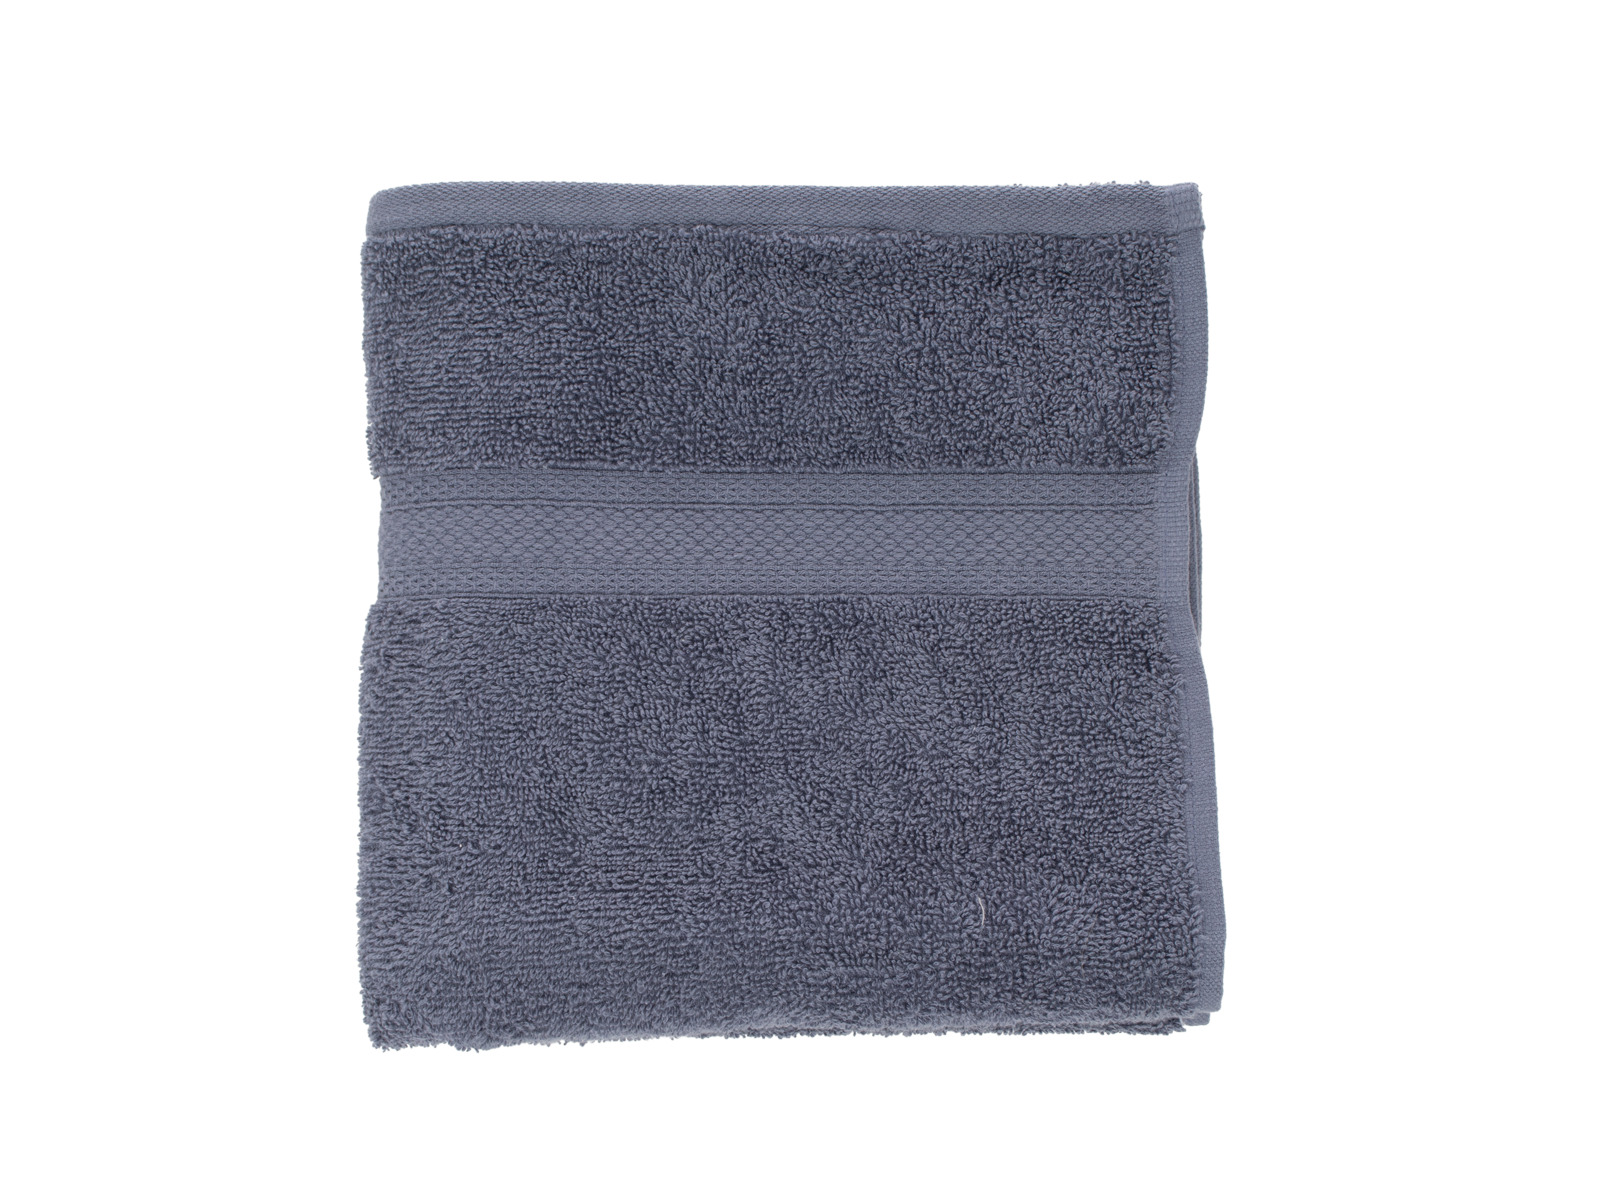 Aanleg Beangstigend regionaal Handdoek blauw - 50 x 100 cm kopen? - Wibra Nederland - Dat doe je goed.